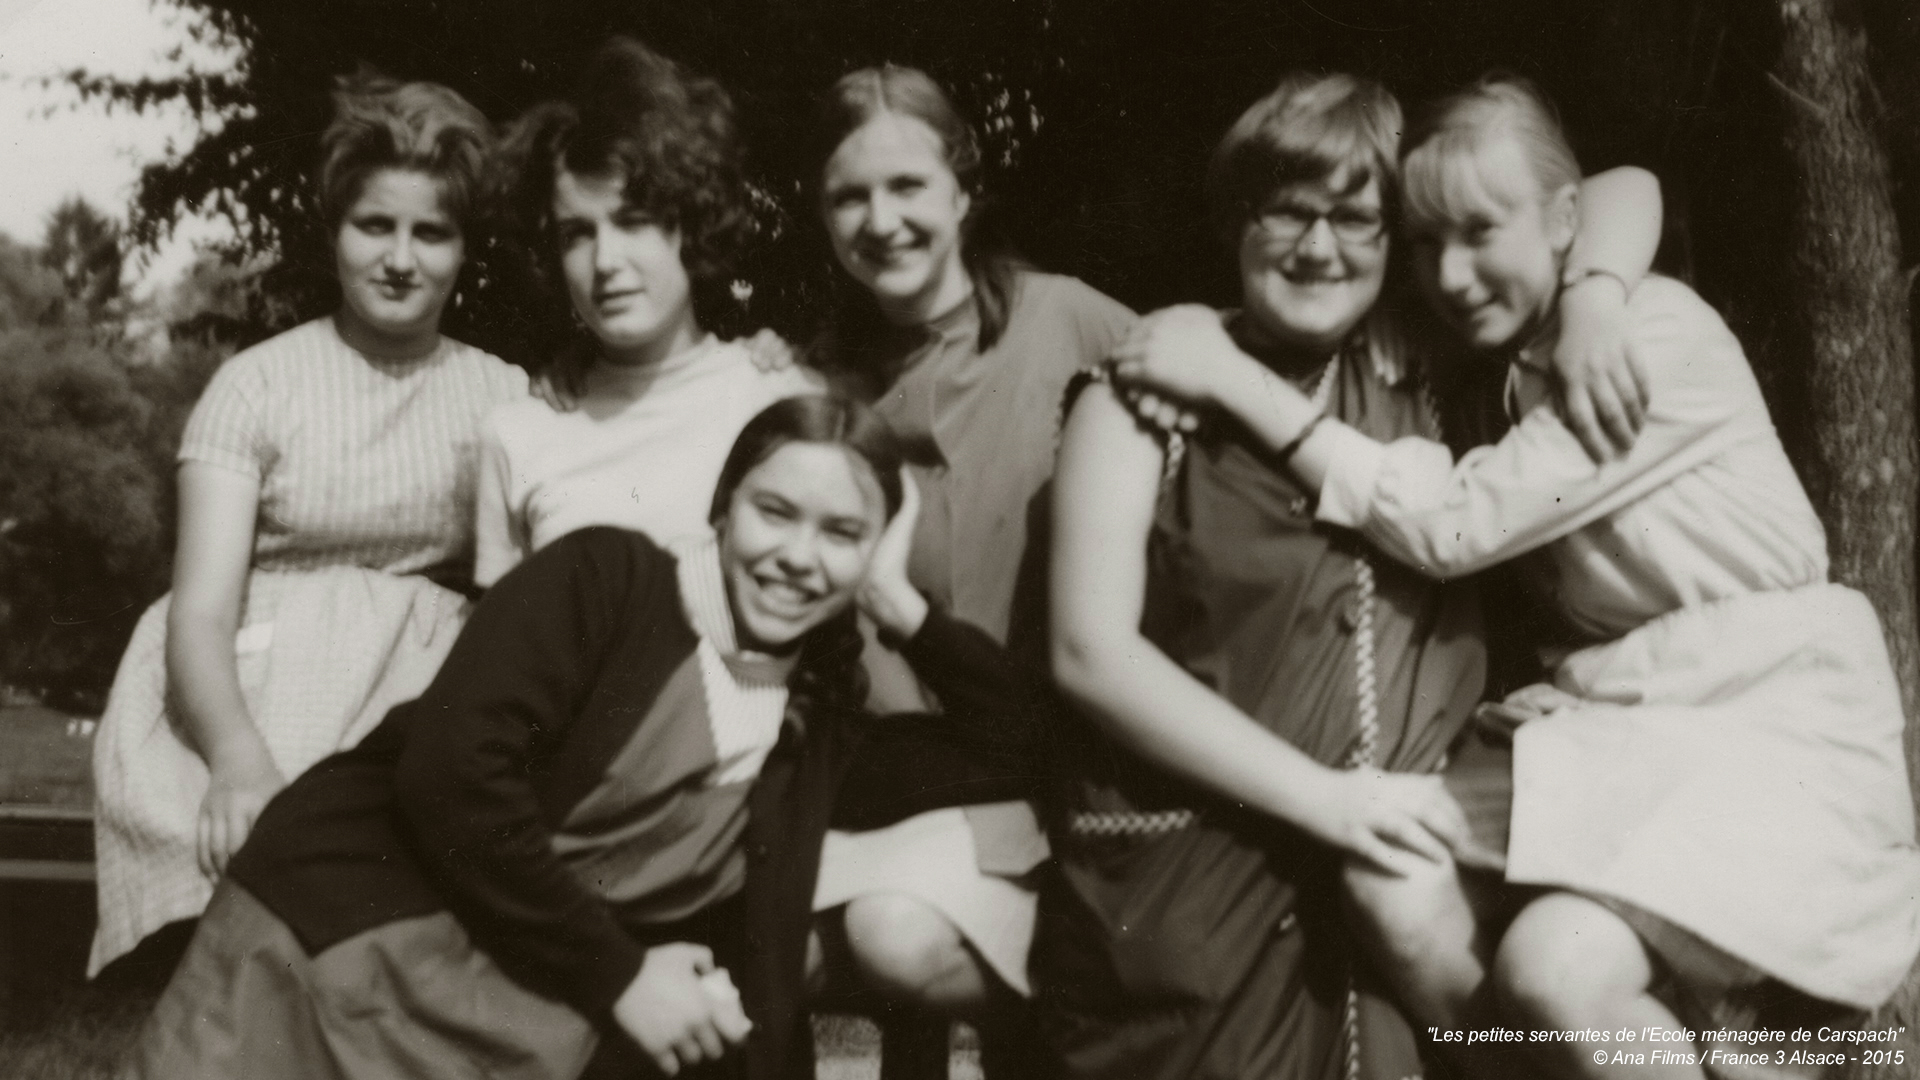 Mardi 20 septembre 2022 20h : Projection du film « Les petites servantes de l’Ecole ménagère de Carspach » de Nadège Buhler   au cinéma le  Luminor-Hôtel de ville